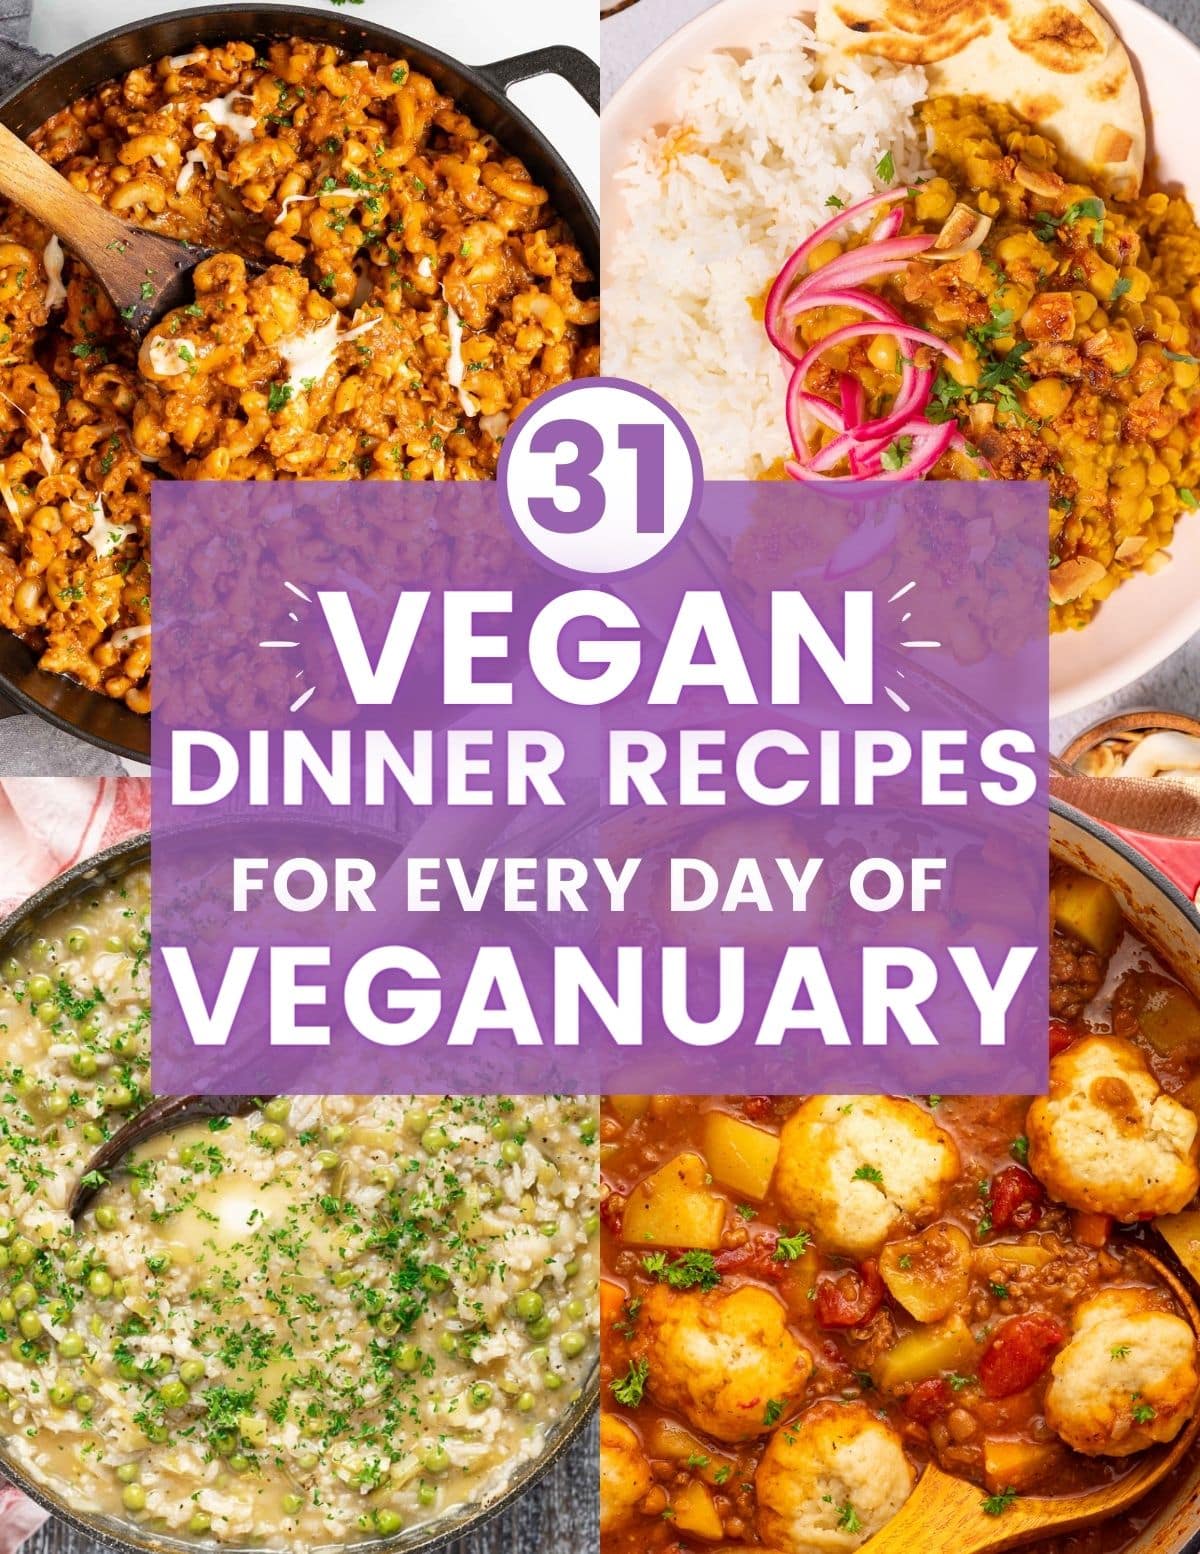 Vegan Dinner Recipes for Veganury